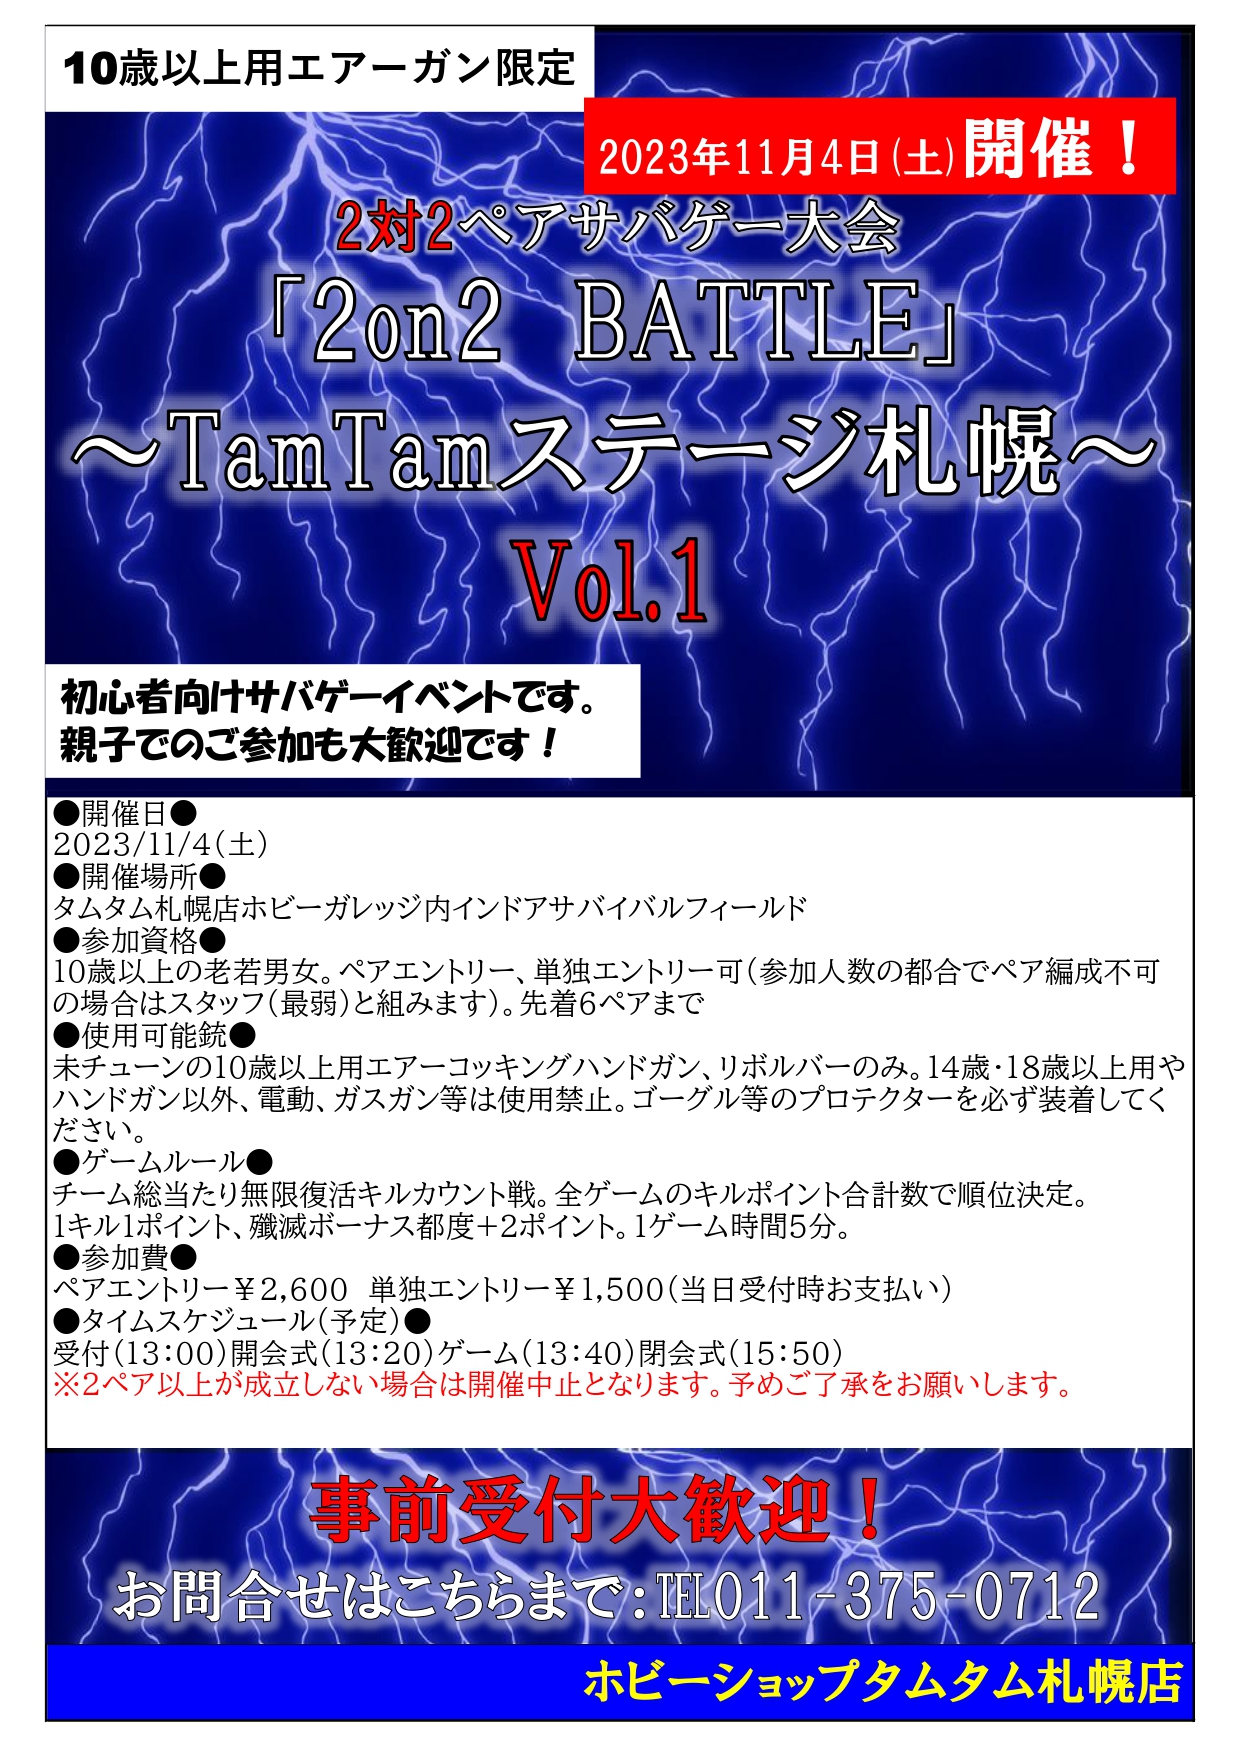 2対2ペアサバゲー大会「2on2BATTLE」～TamTamステージ札幌～Vol.1開催